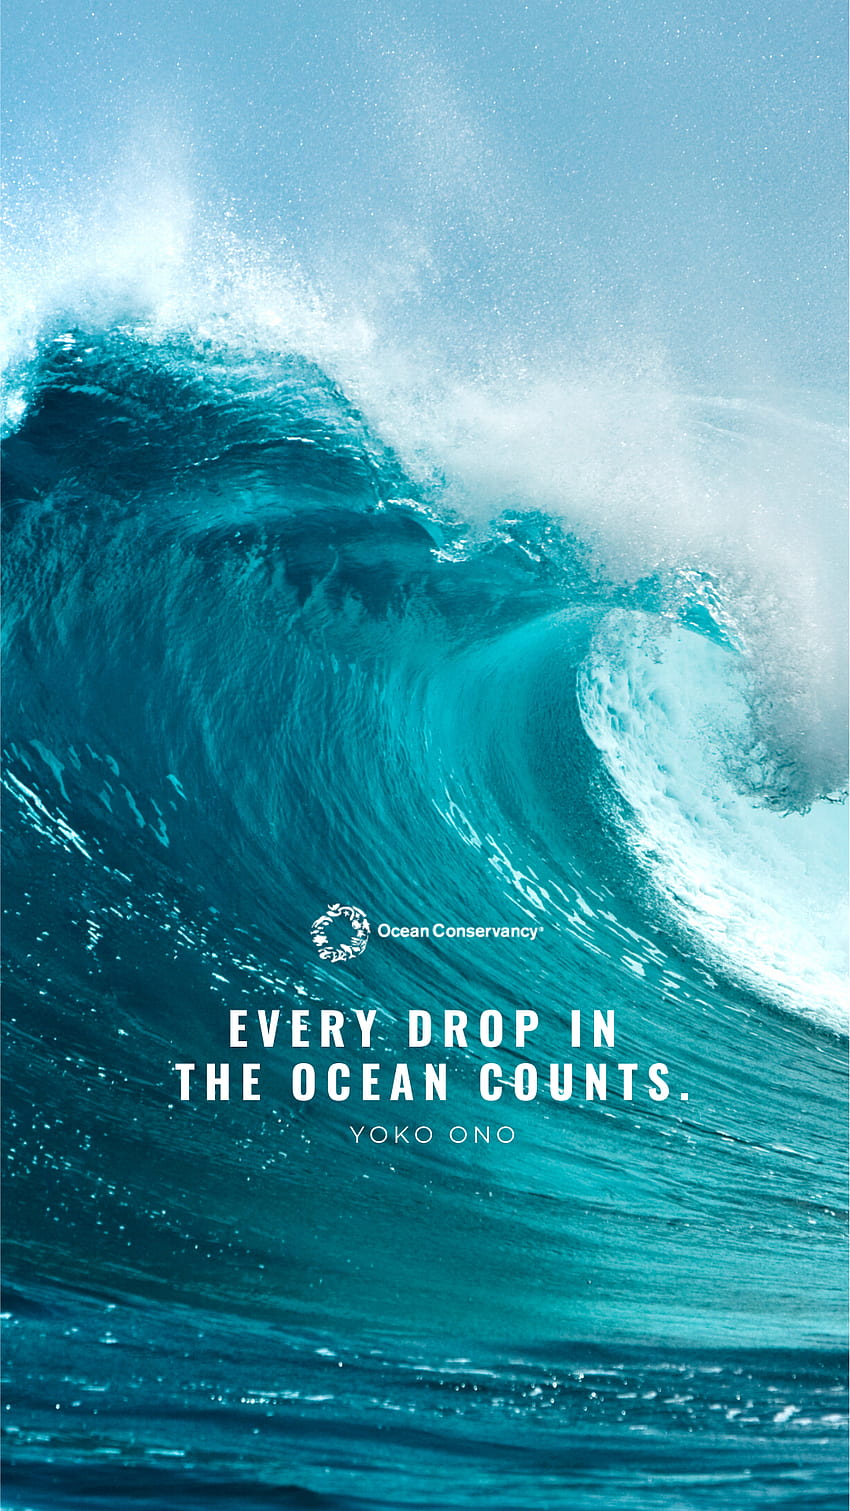 Lautan Menakjubkan untuk Mencerahkan Hari Anda, hari laut 2021 wallpaper ponsel HD